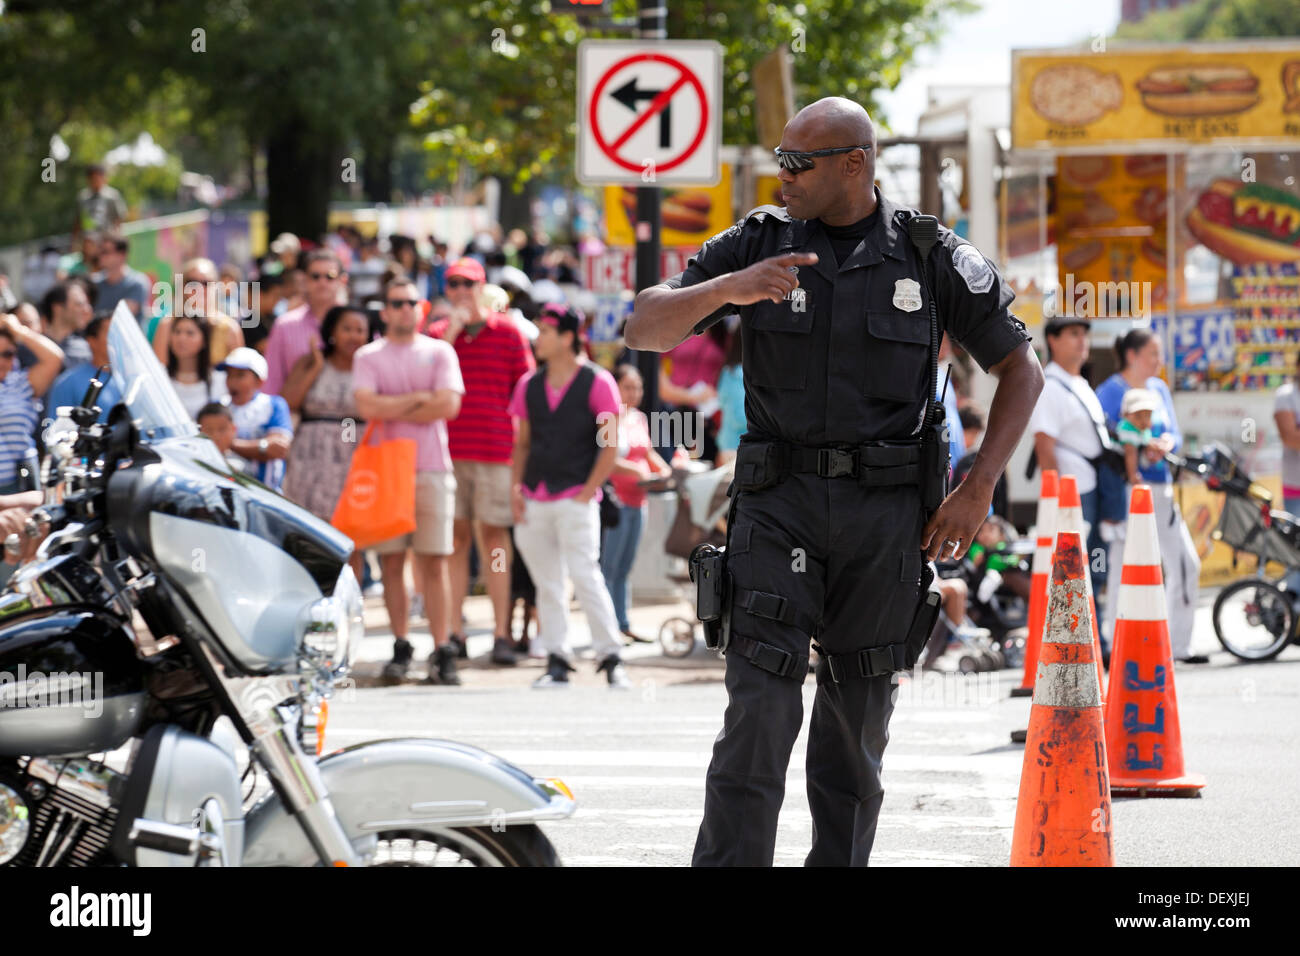 Washington DC Metropolitan police officer directing traffic Stock Photo